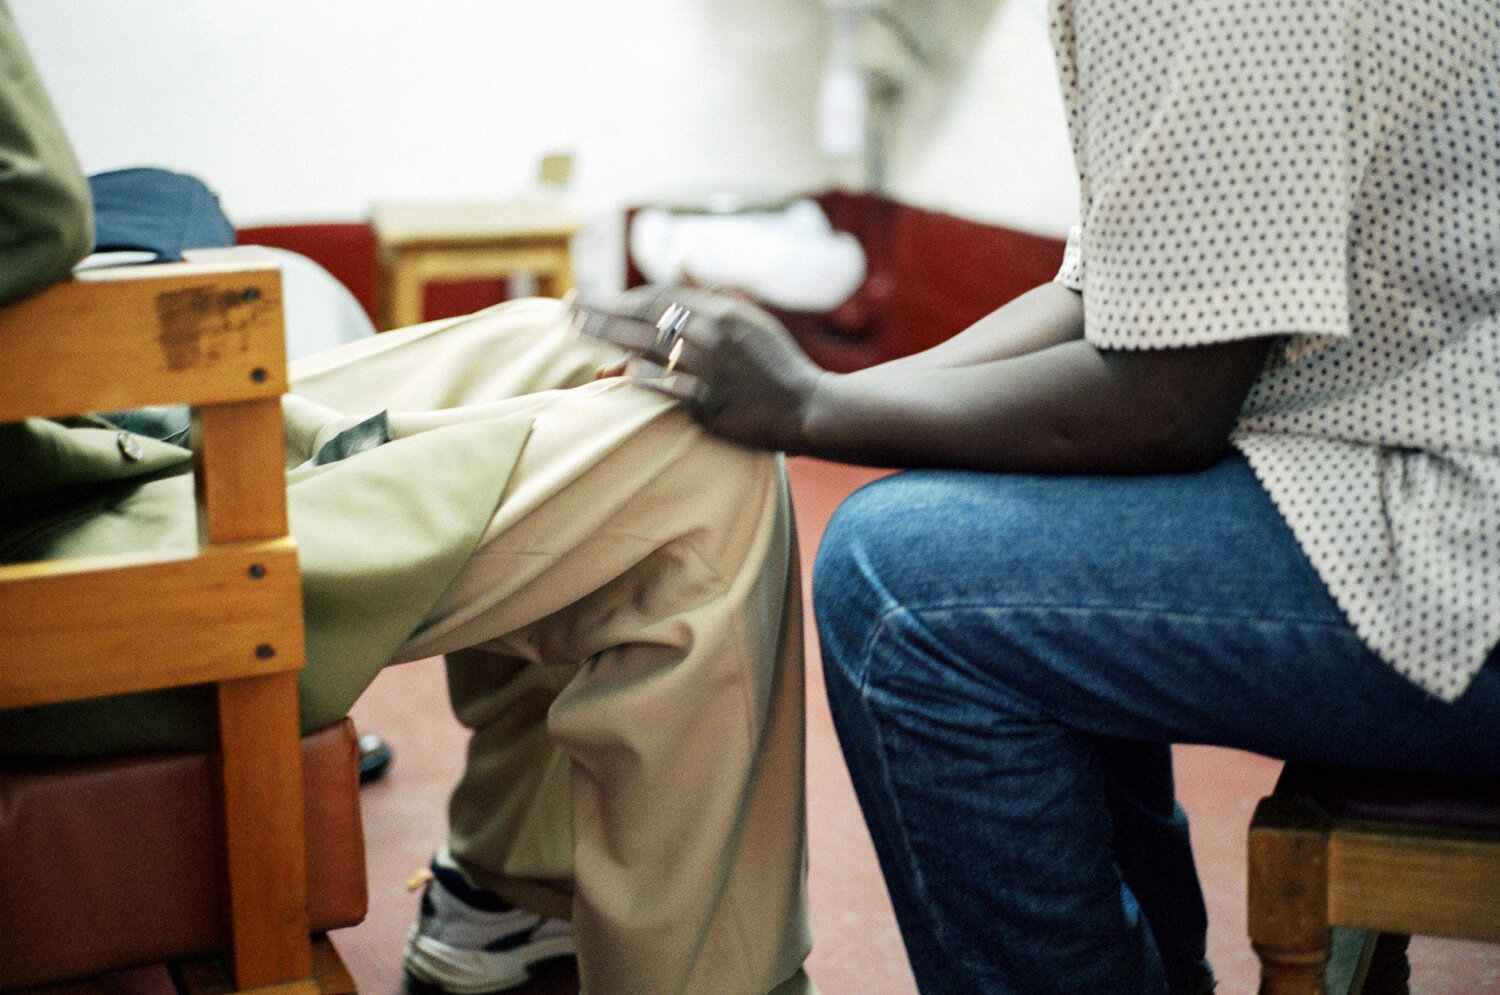  Le mari est pris en charge par une conseillère médicale de MSF, qui va l'accompagner dans son protocole de soins. Dans la clinique SIDA du bidonville de Matharé. Avec Médecins Sans Frontières, dans la lutte pour l'accès aux médicaments essentiels. N